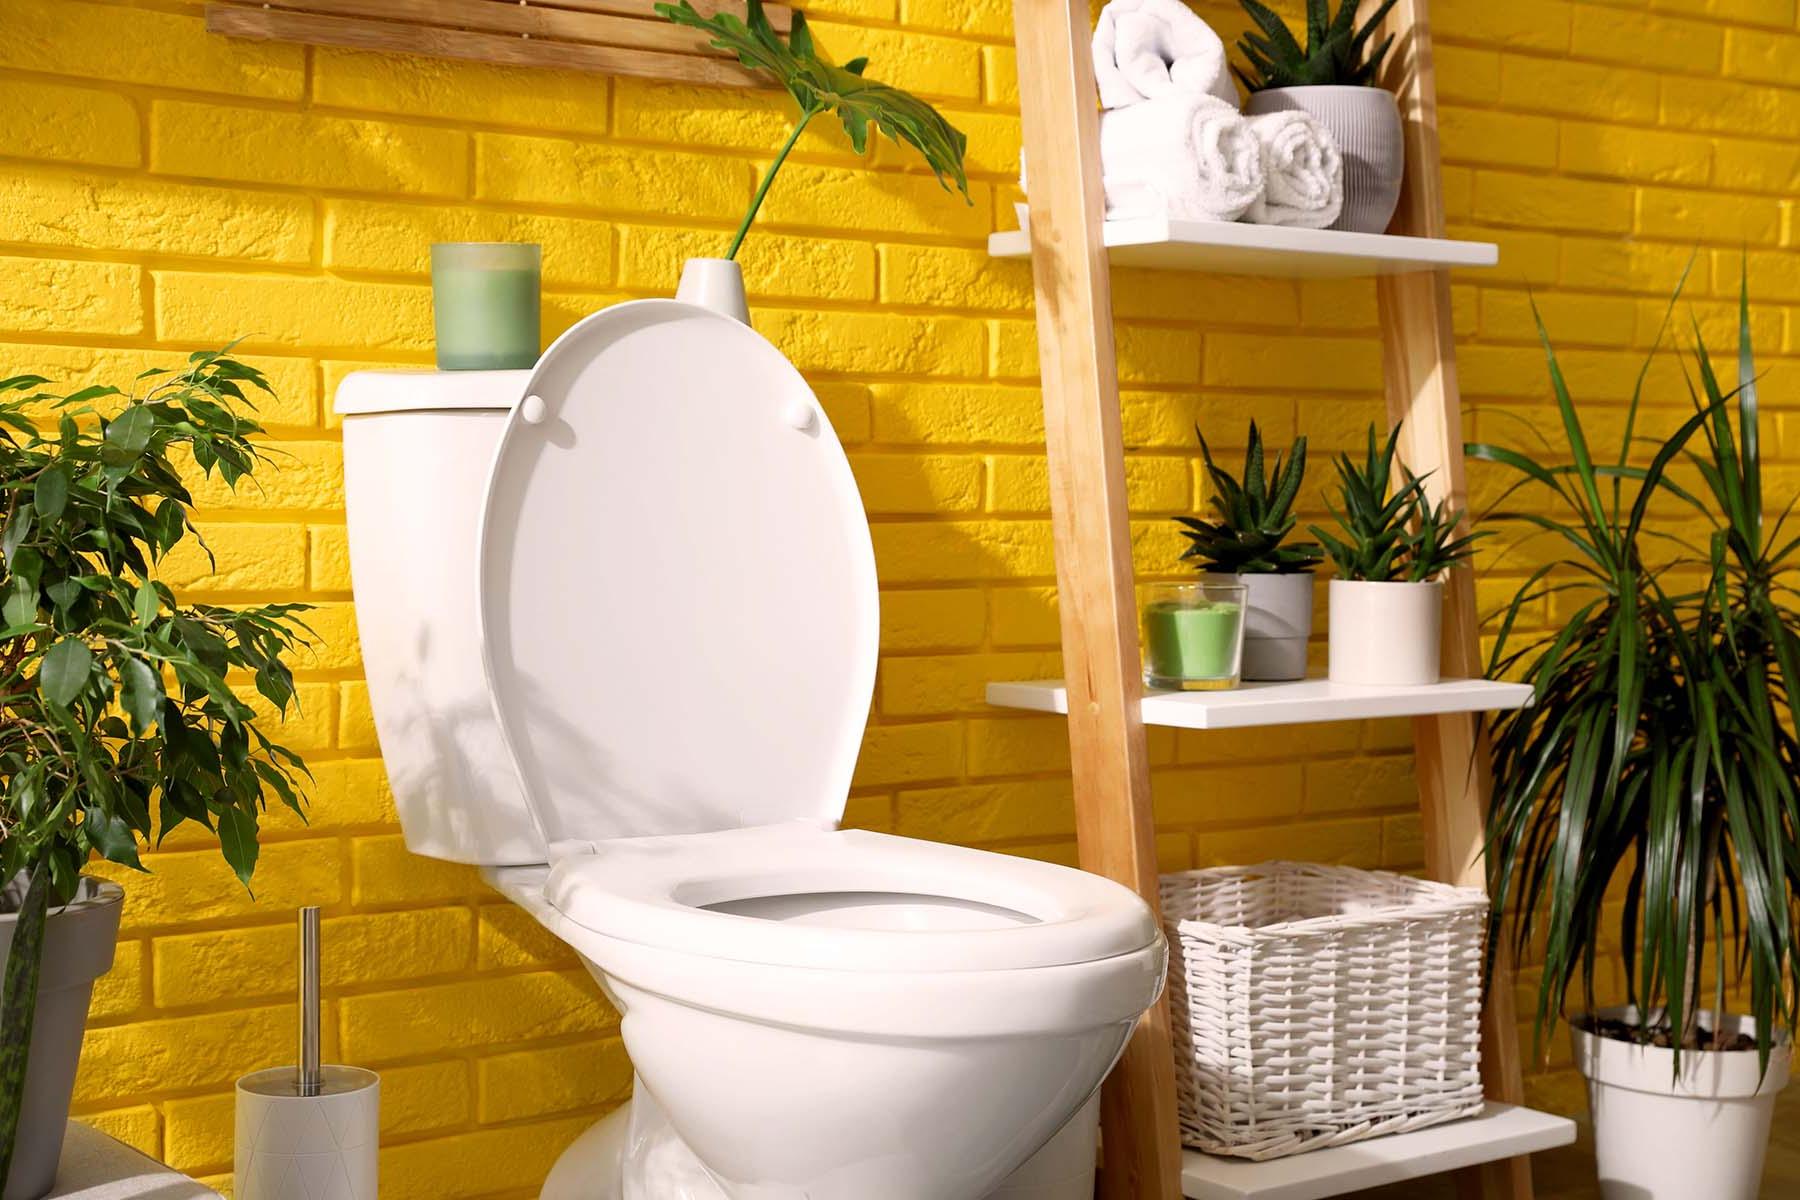 白色的马桶衬着亮黄色的浴室墙